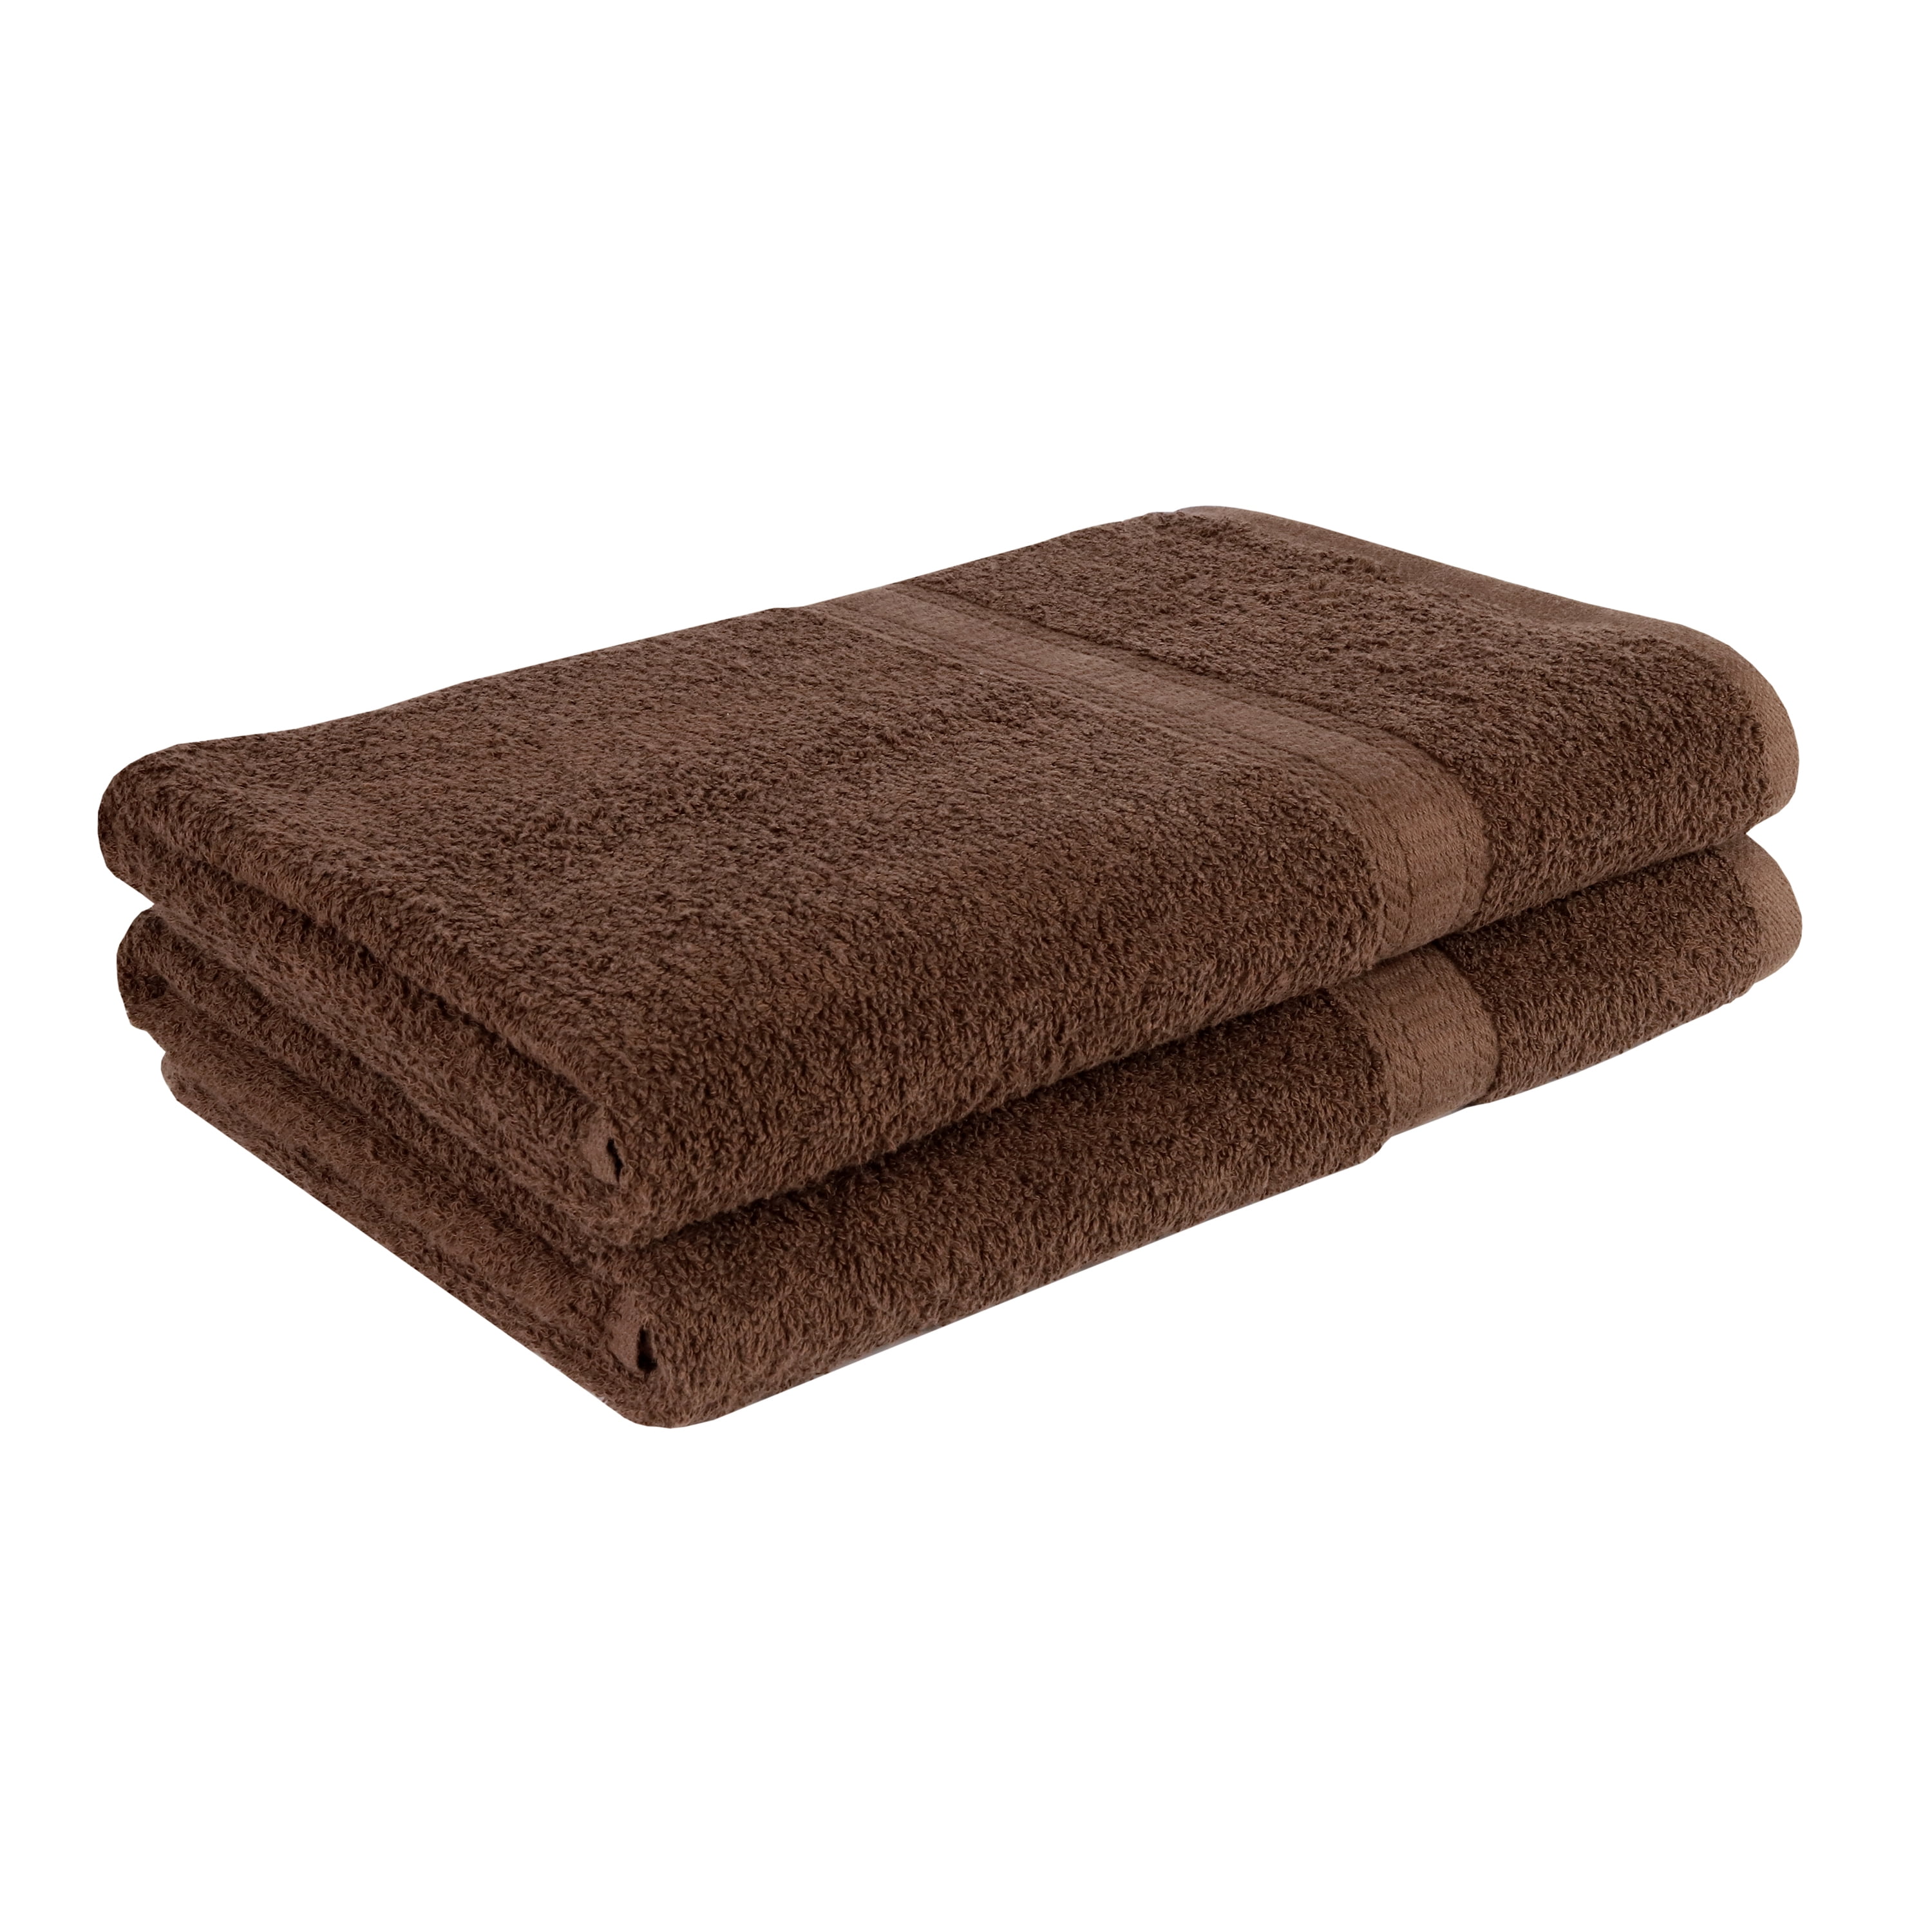 Royal Velvet Grey 2 Piece Bath Sheet Towel Set – Ideal